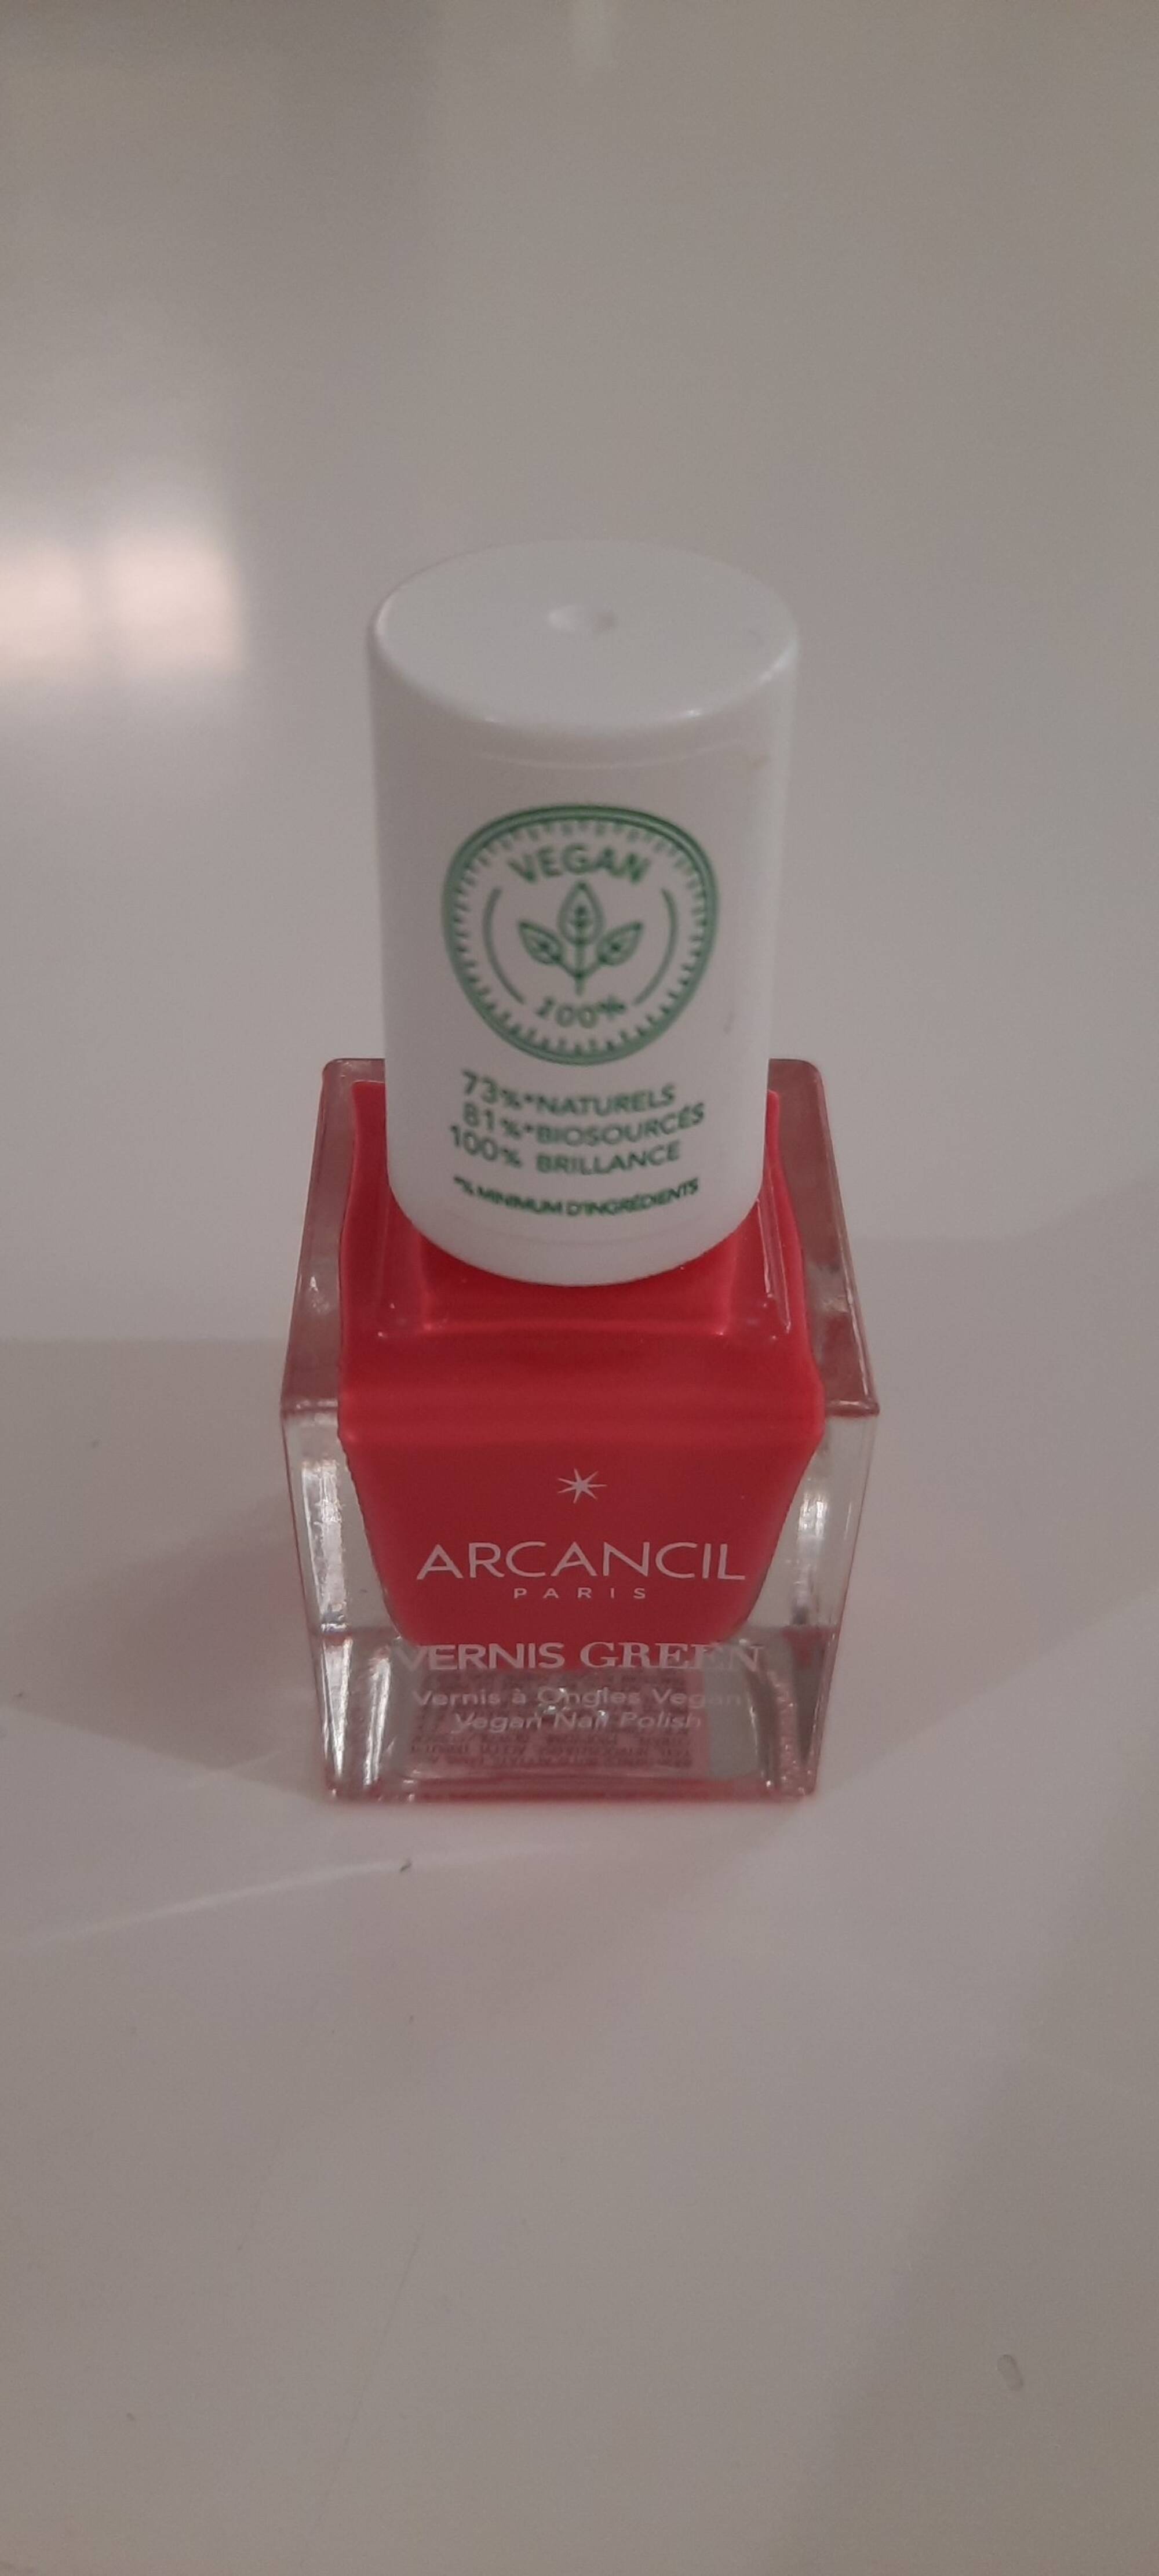 ARCANCIL - Vernis green - Vernis à ongles vegan